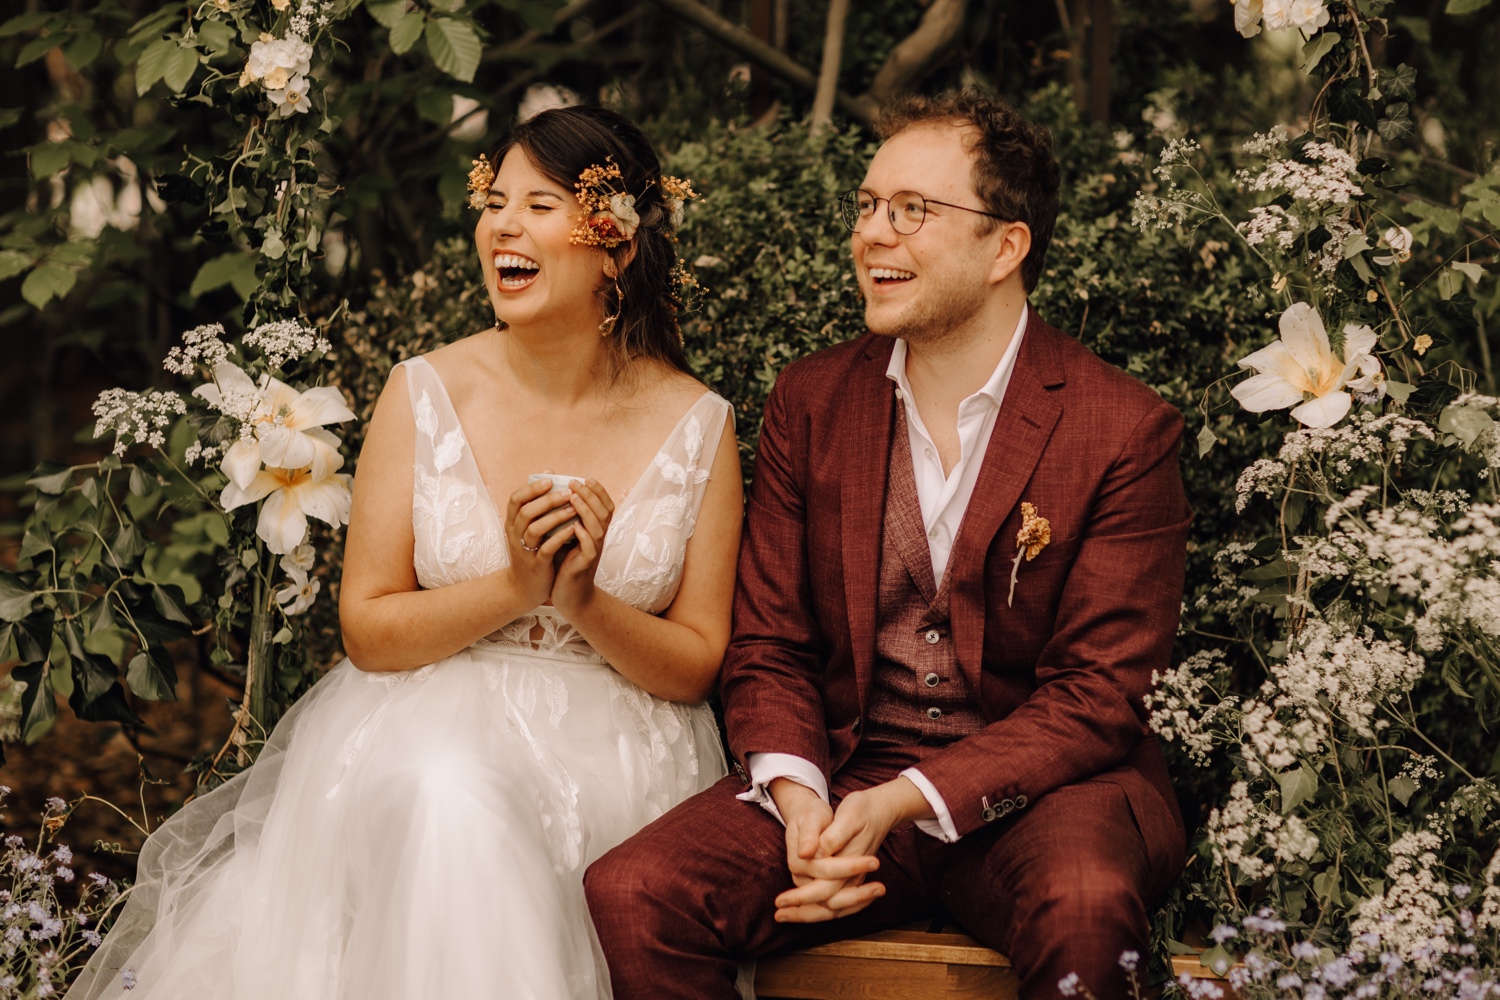 Huwelijksfotograaf Limburg - bruidspaar lacht tijdens ceremonie